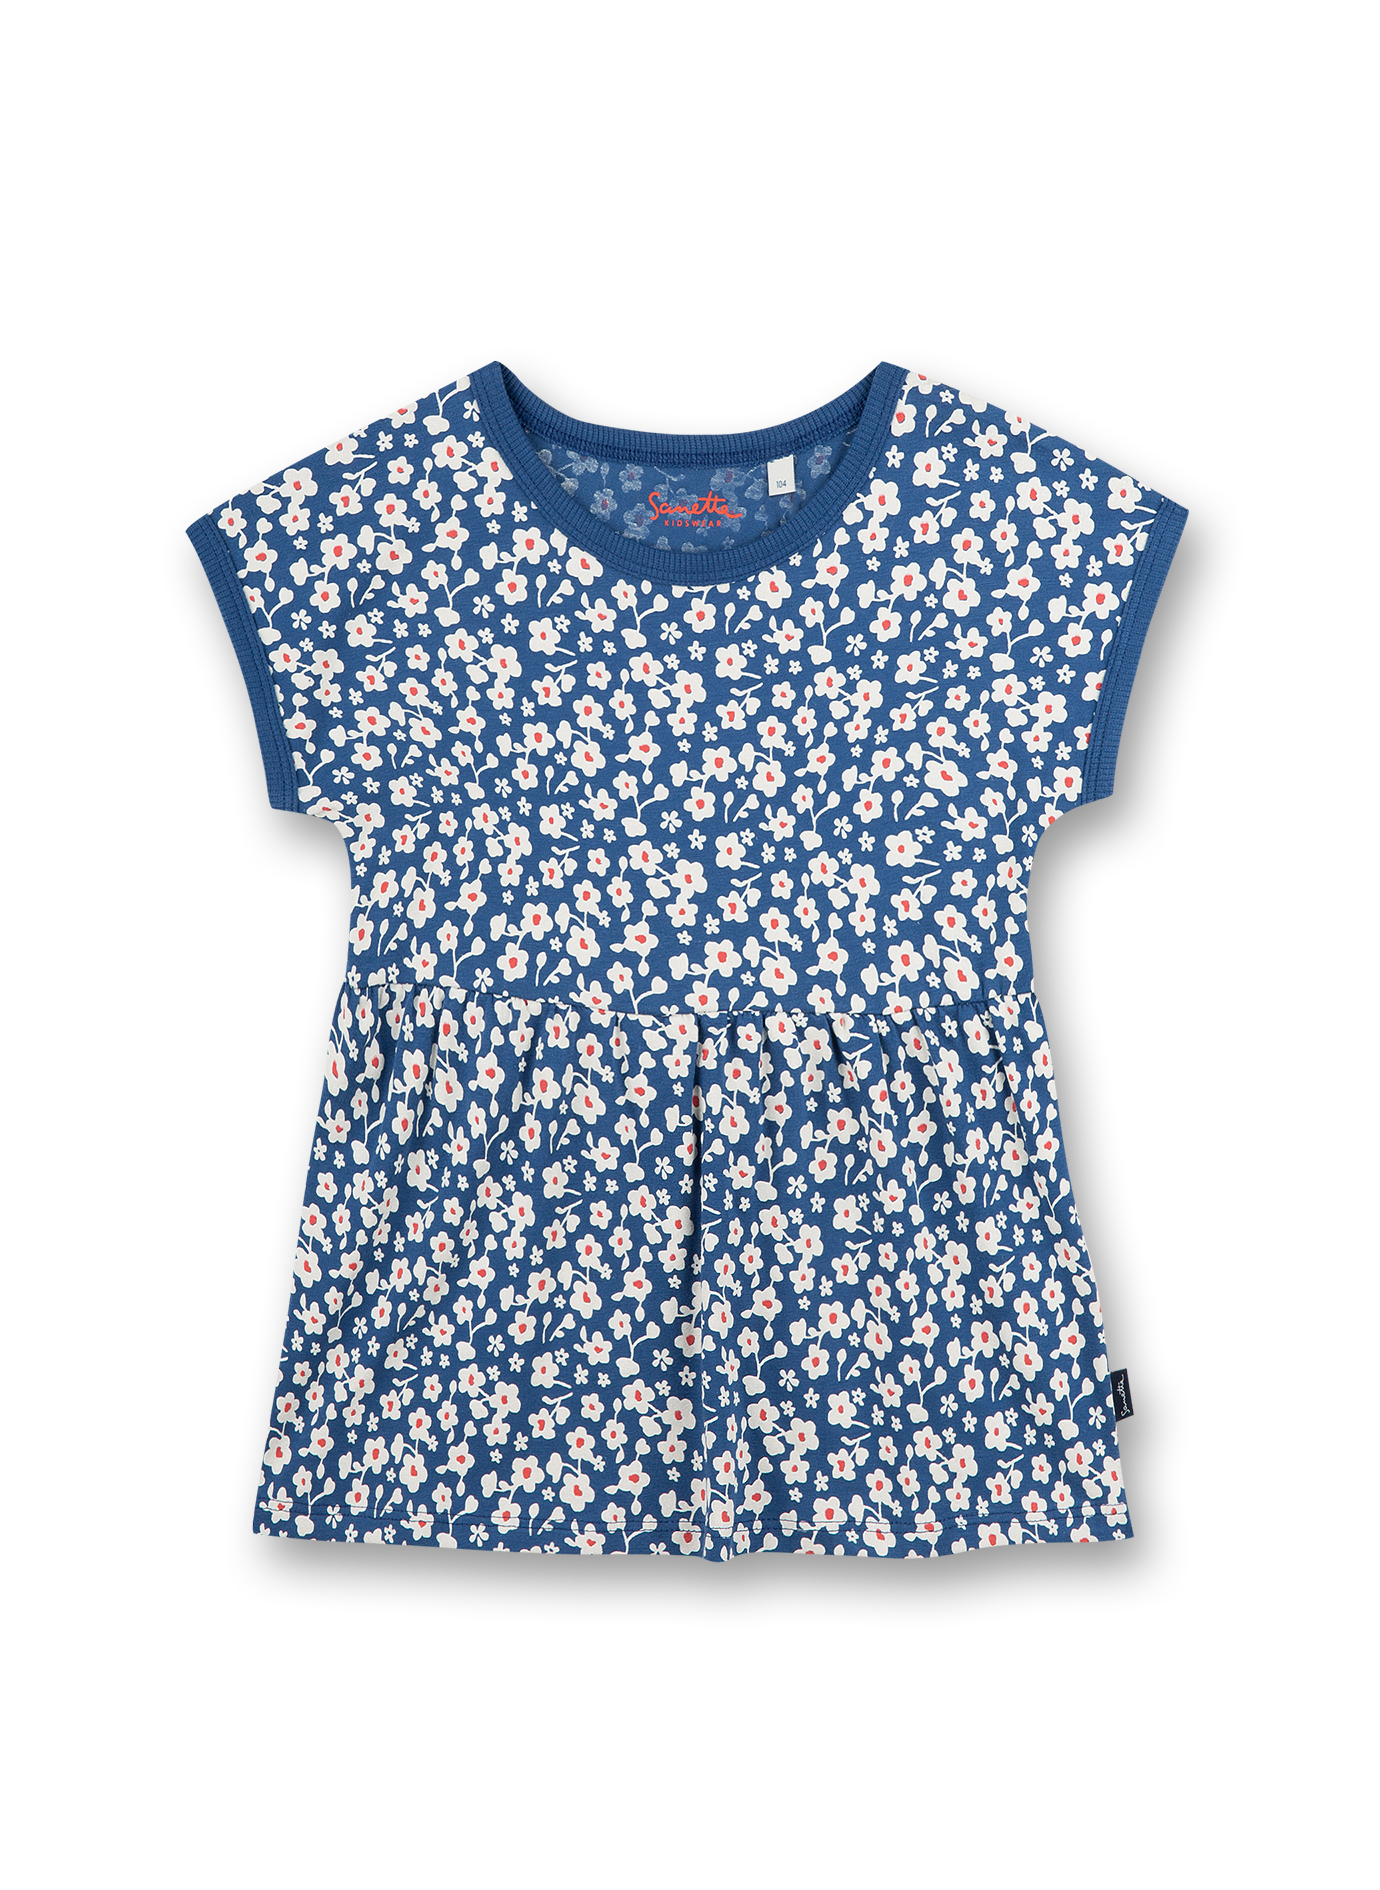 Mädchen T-Shirt Blau Blumenallover Strawberry